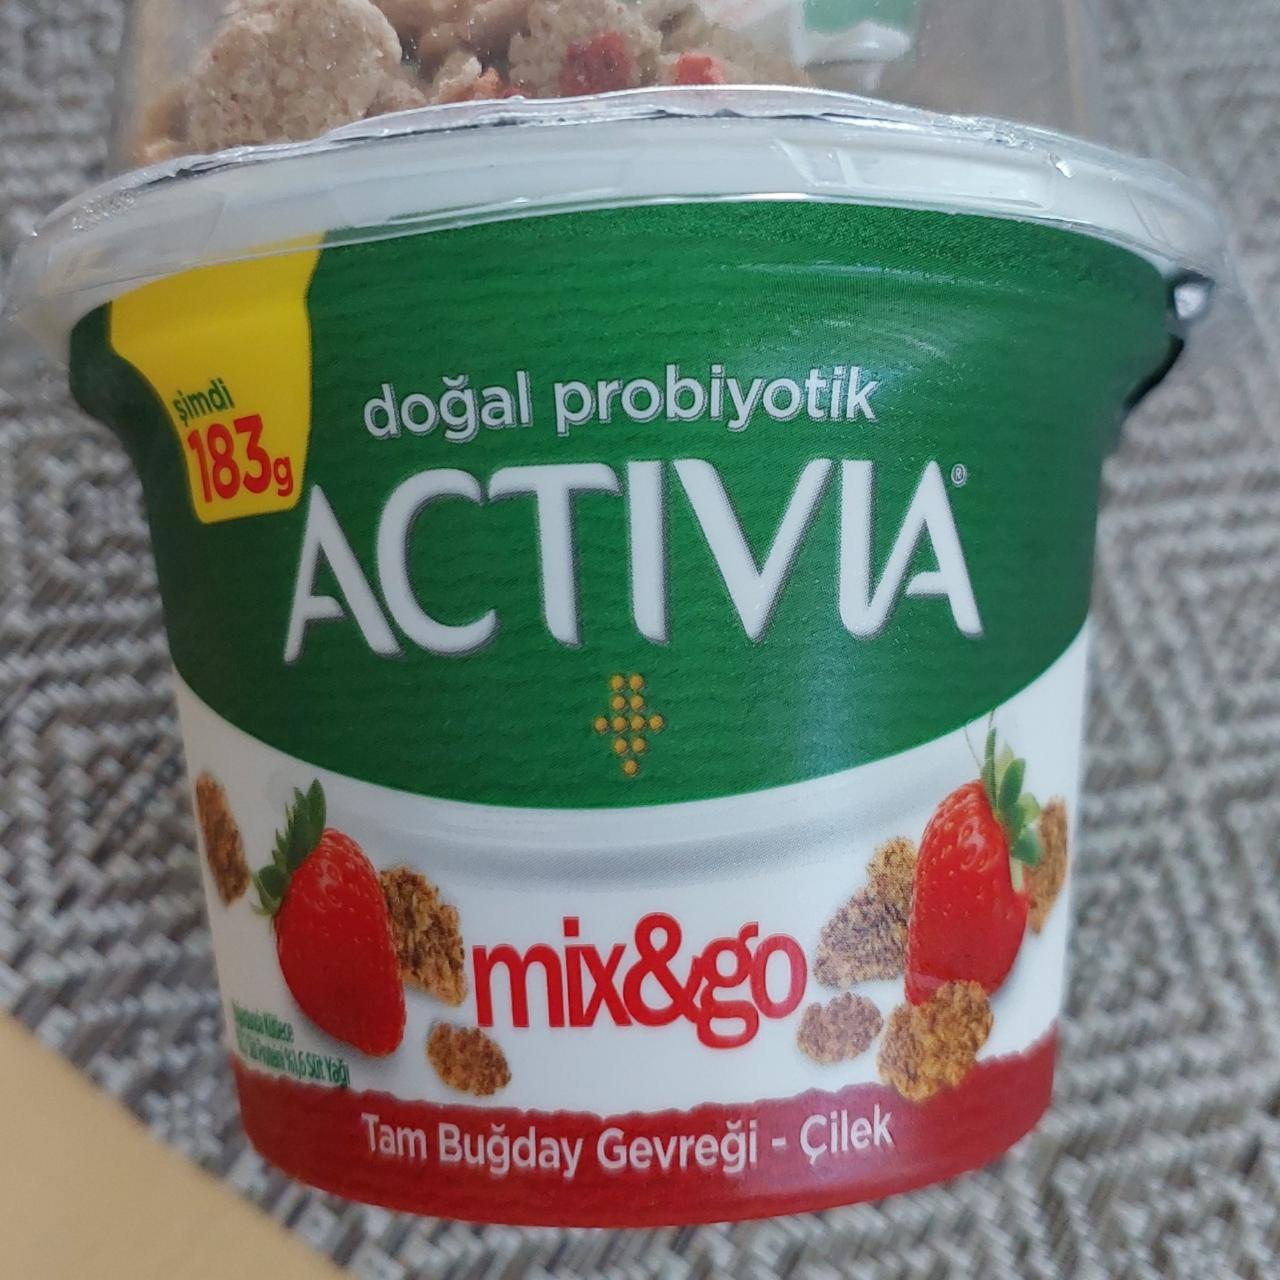 Фото - йогурт с мюсли и клубникой пробиотик Activia